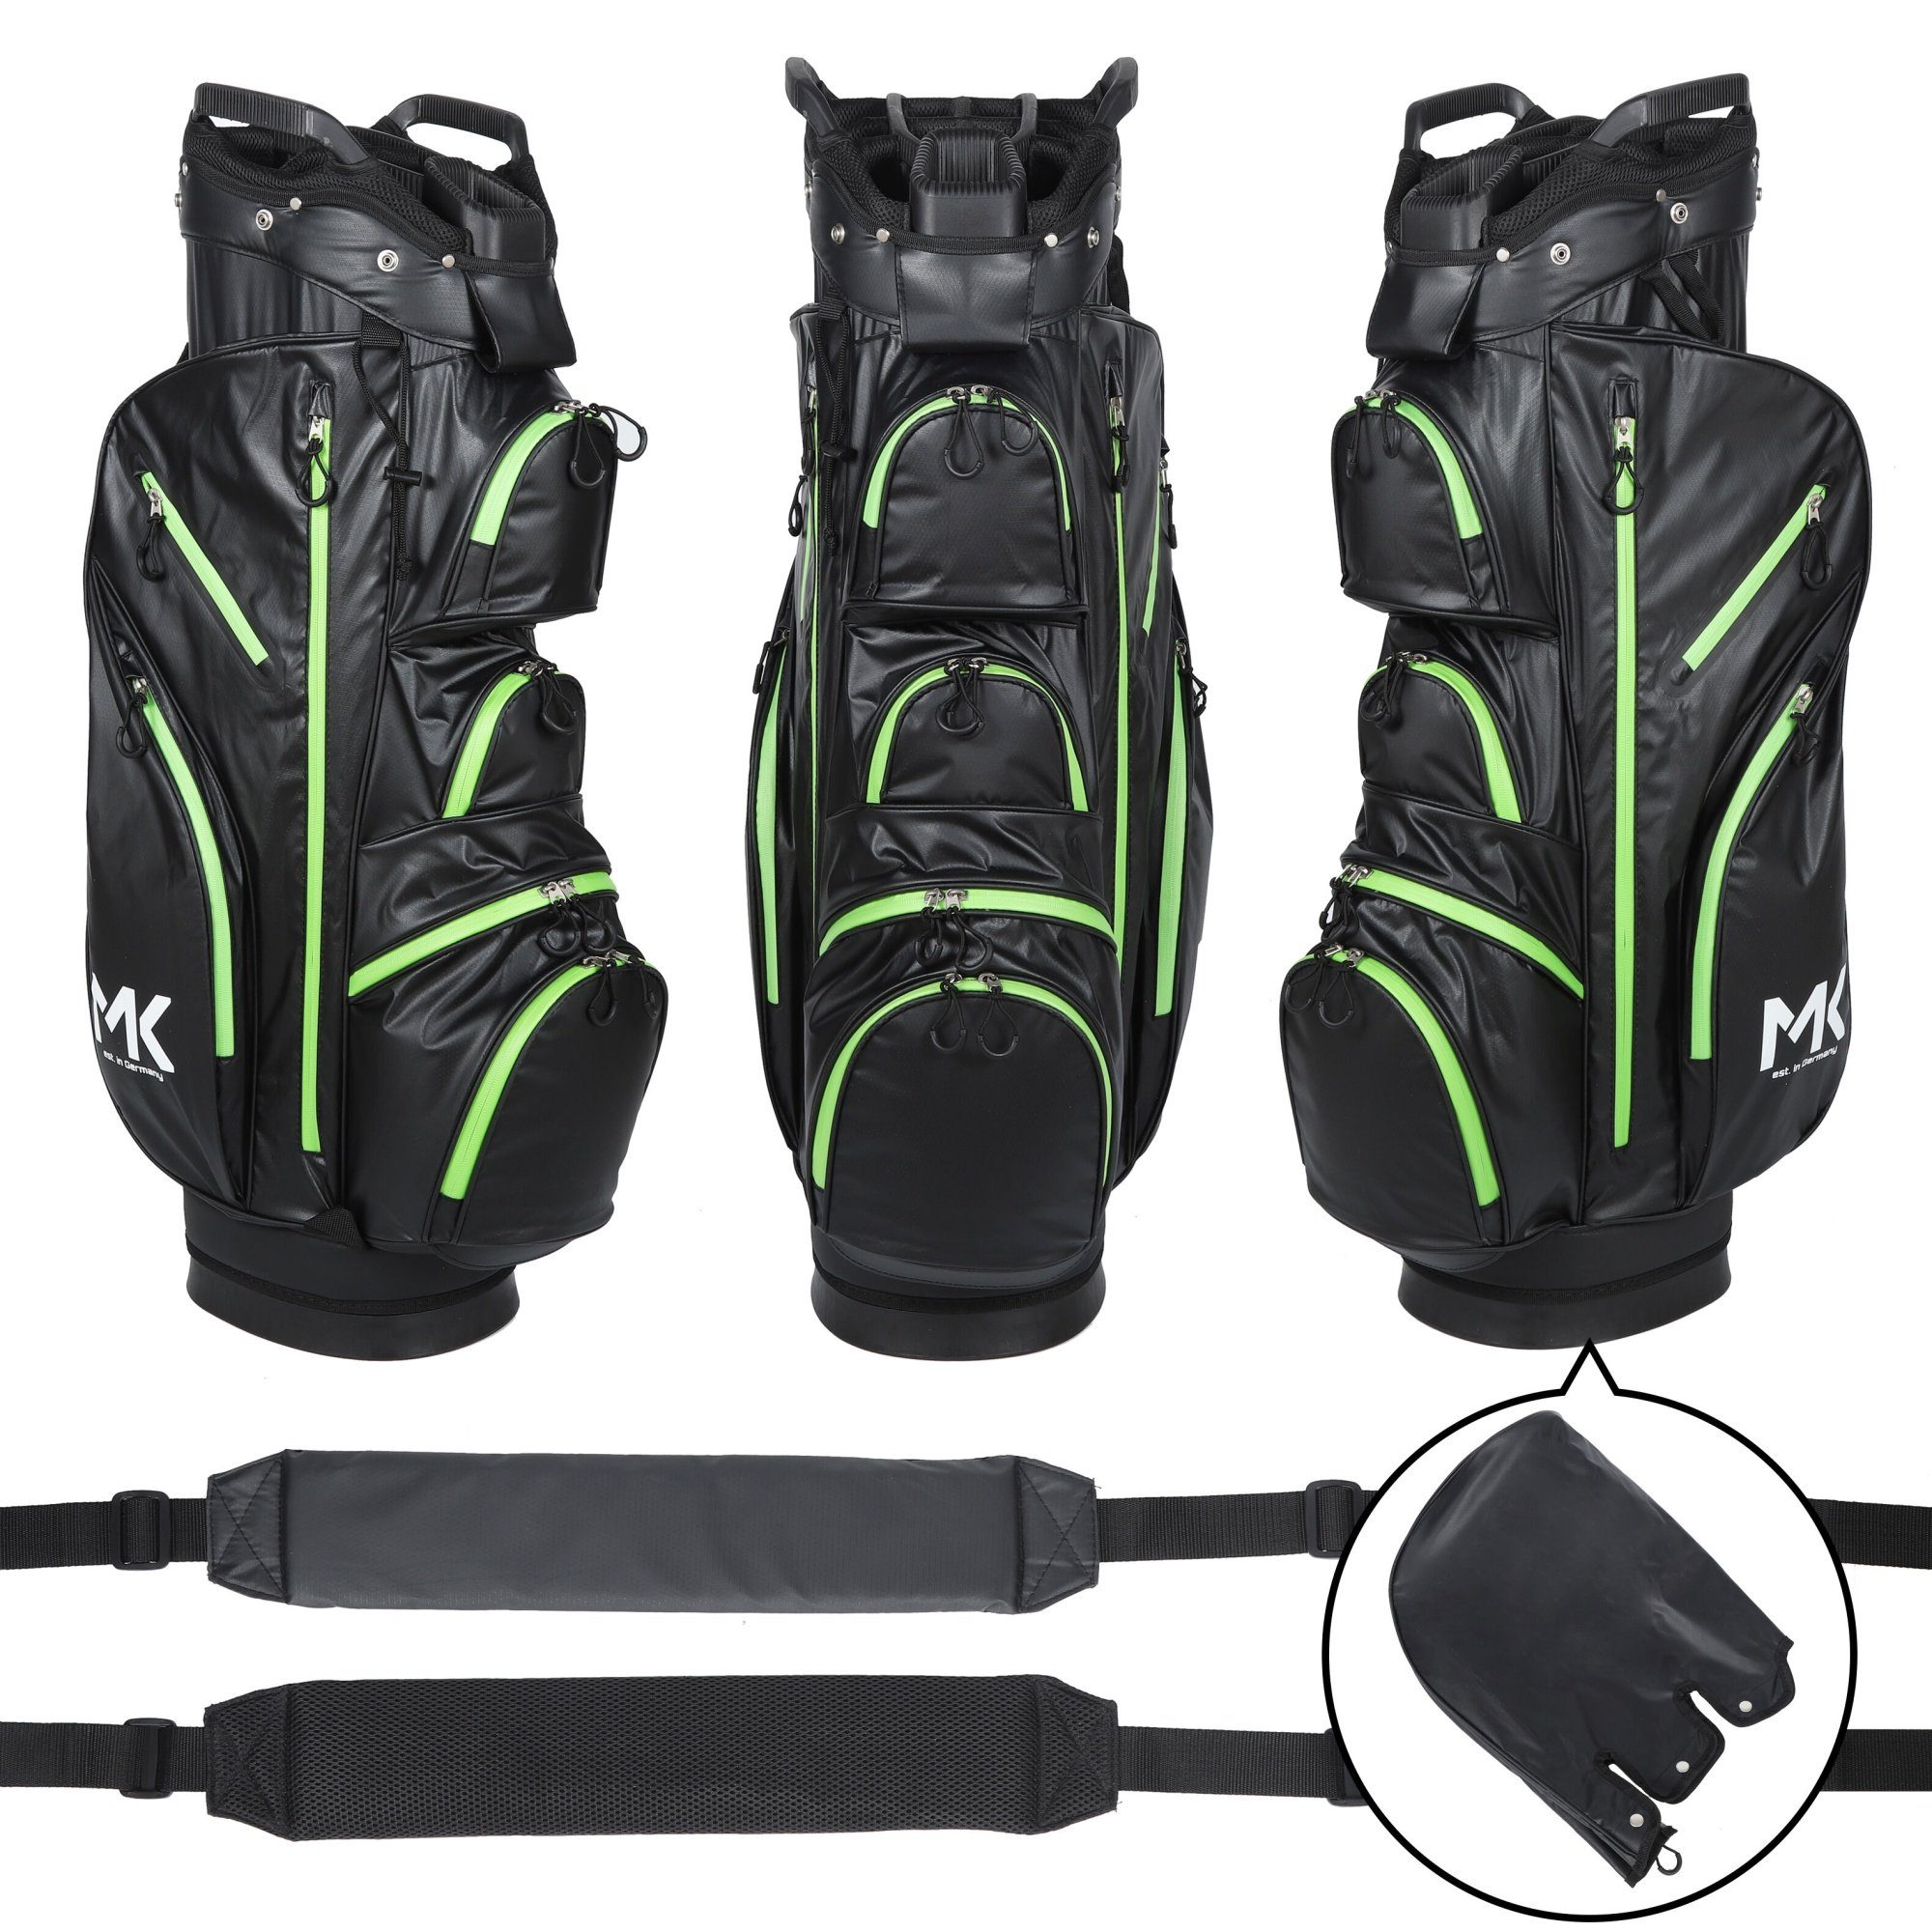 MK Golf Golftrolley Equipment Tour Grün wasserdicht Solid Golftasche, + - MK Trolleybag Golf Golfbag